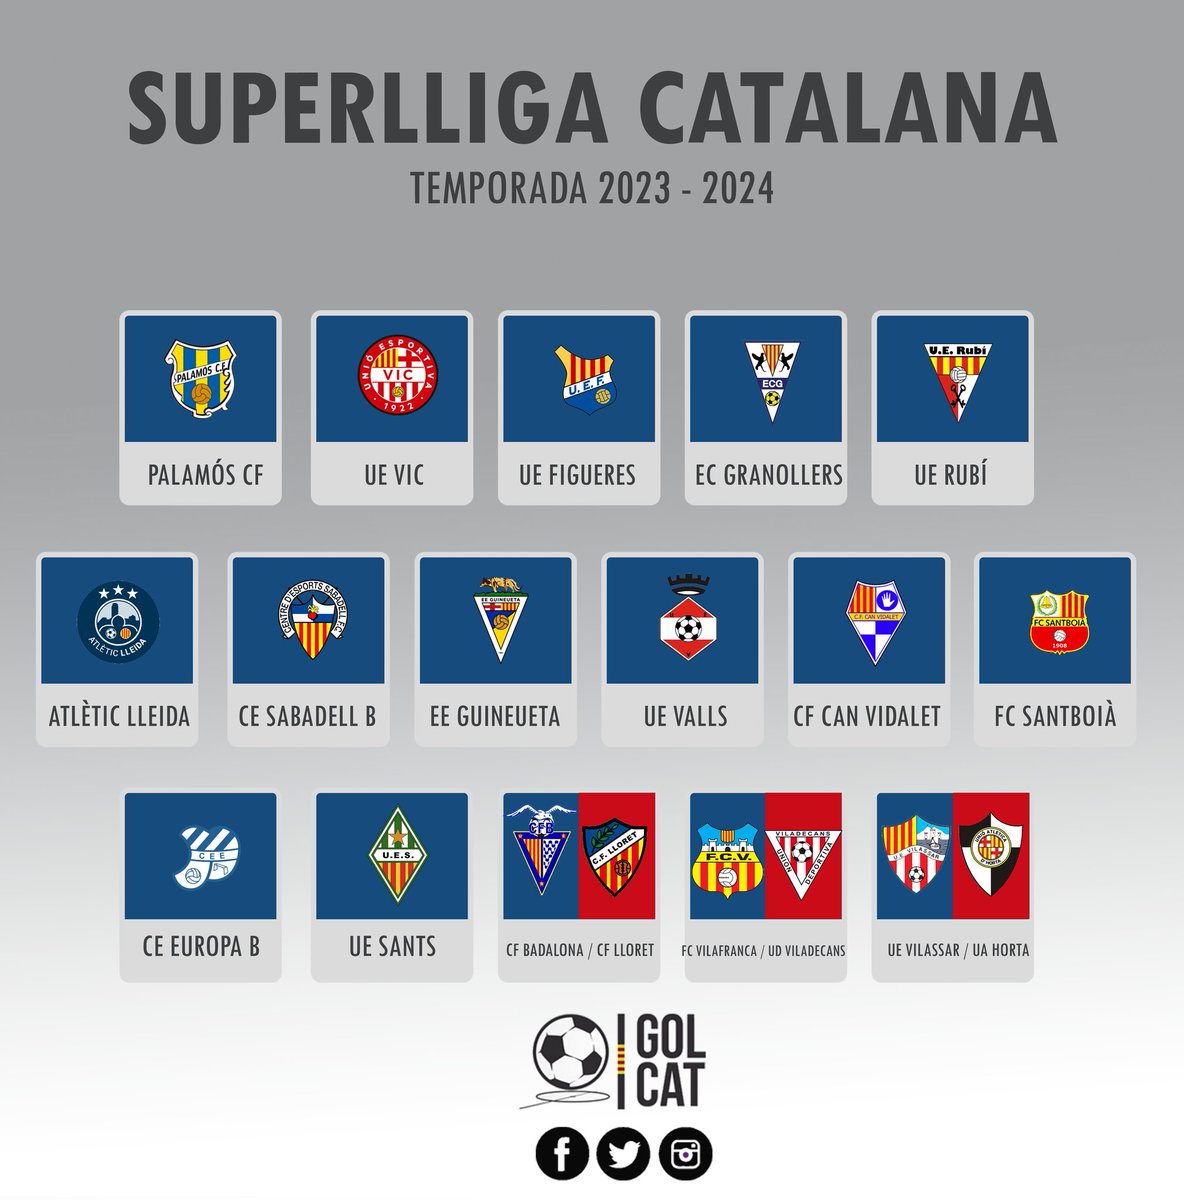 Quina meravella la 𝐒𝐔𝐏𝐄𝐑𝐋𝐋𝐈𝐆𝐀 Catalana 2023 - 2024 🥹

#1cat1 #1cat2 #1cat3 #futbolcat #SuperlligaCatalana